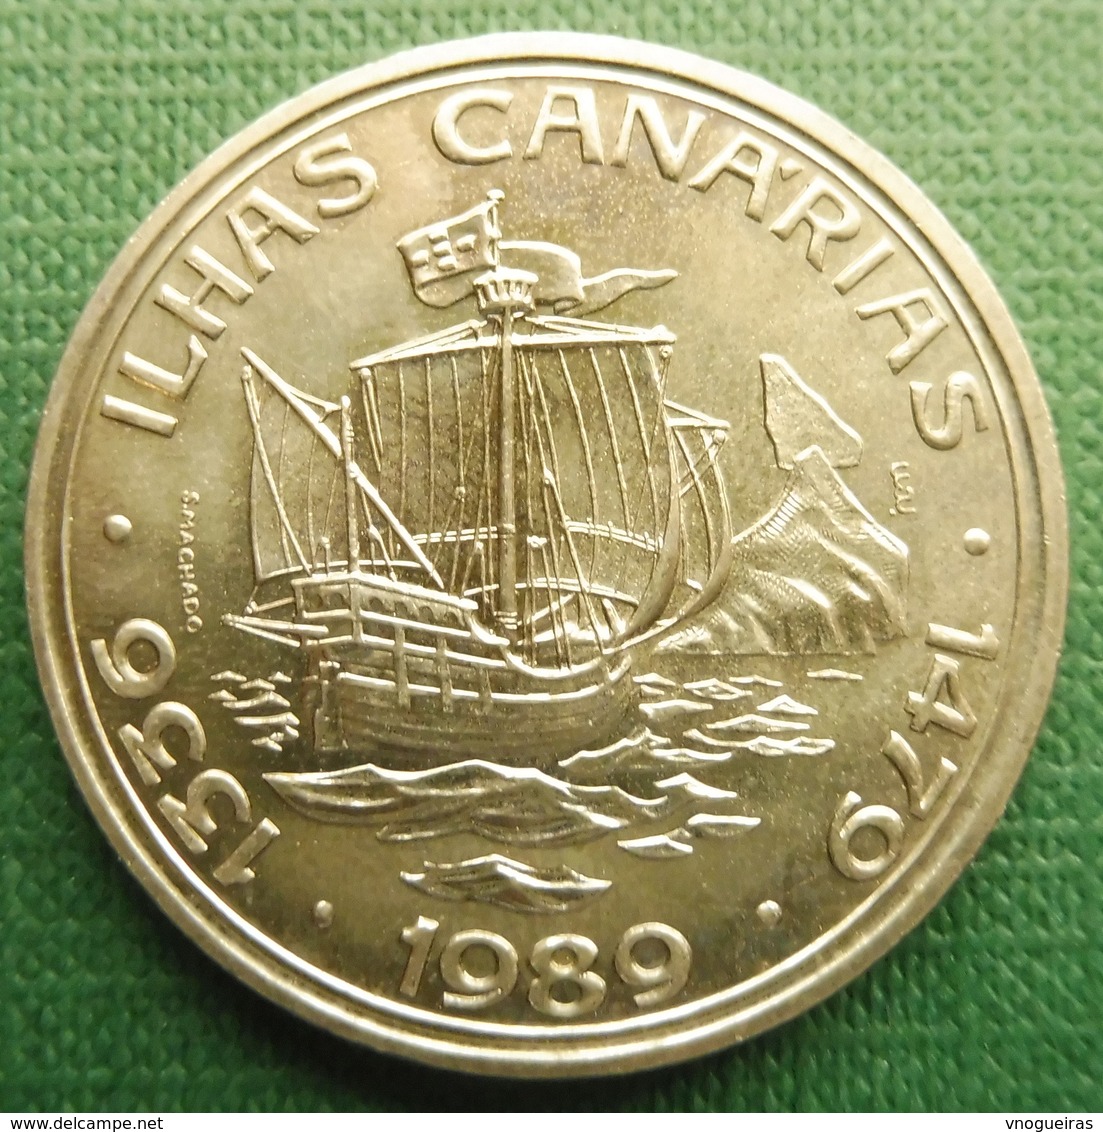 Portugal | 100 Escudos 1989 Ilhas Canarias | KM 646 |  UNC - Portugal